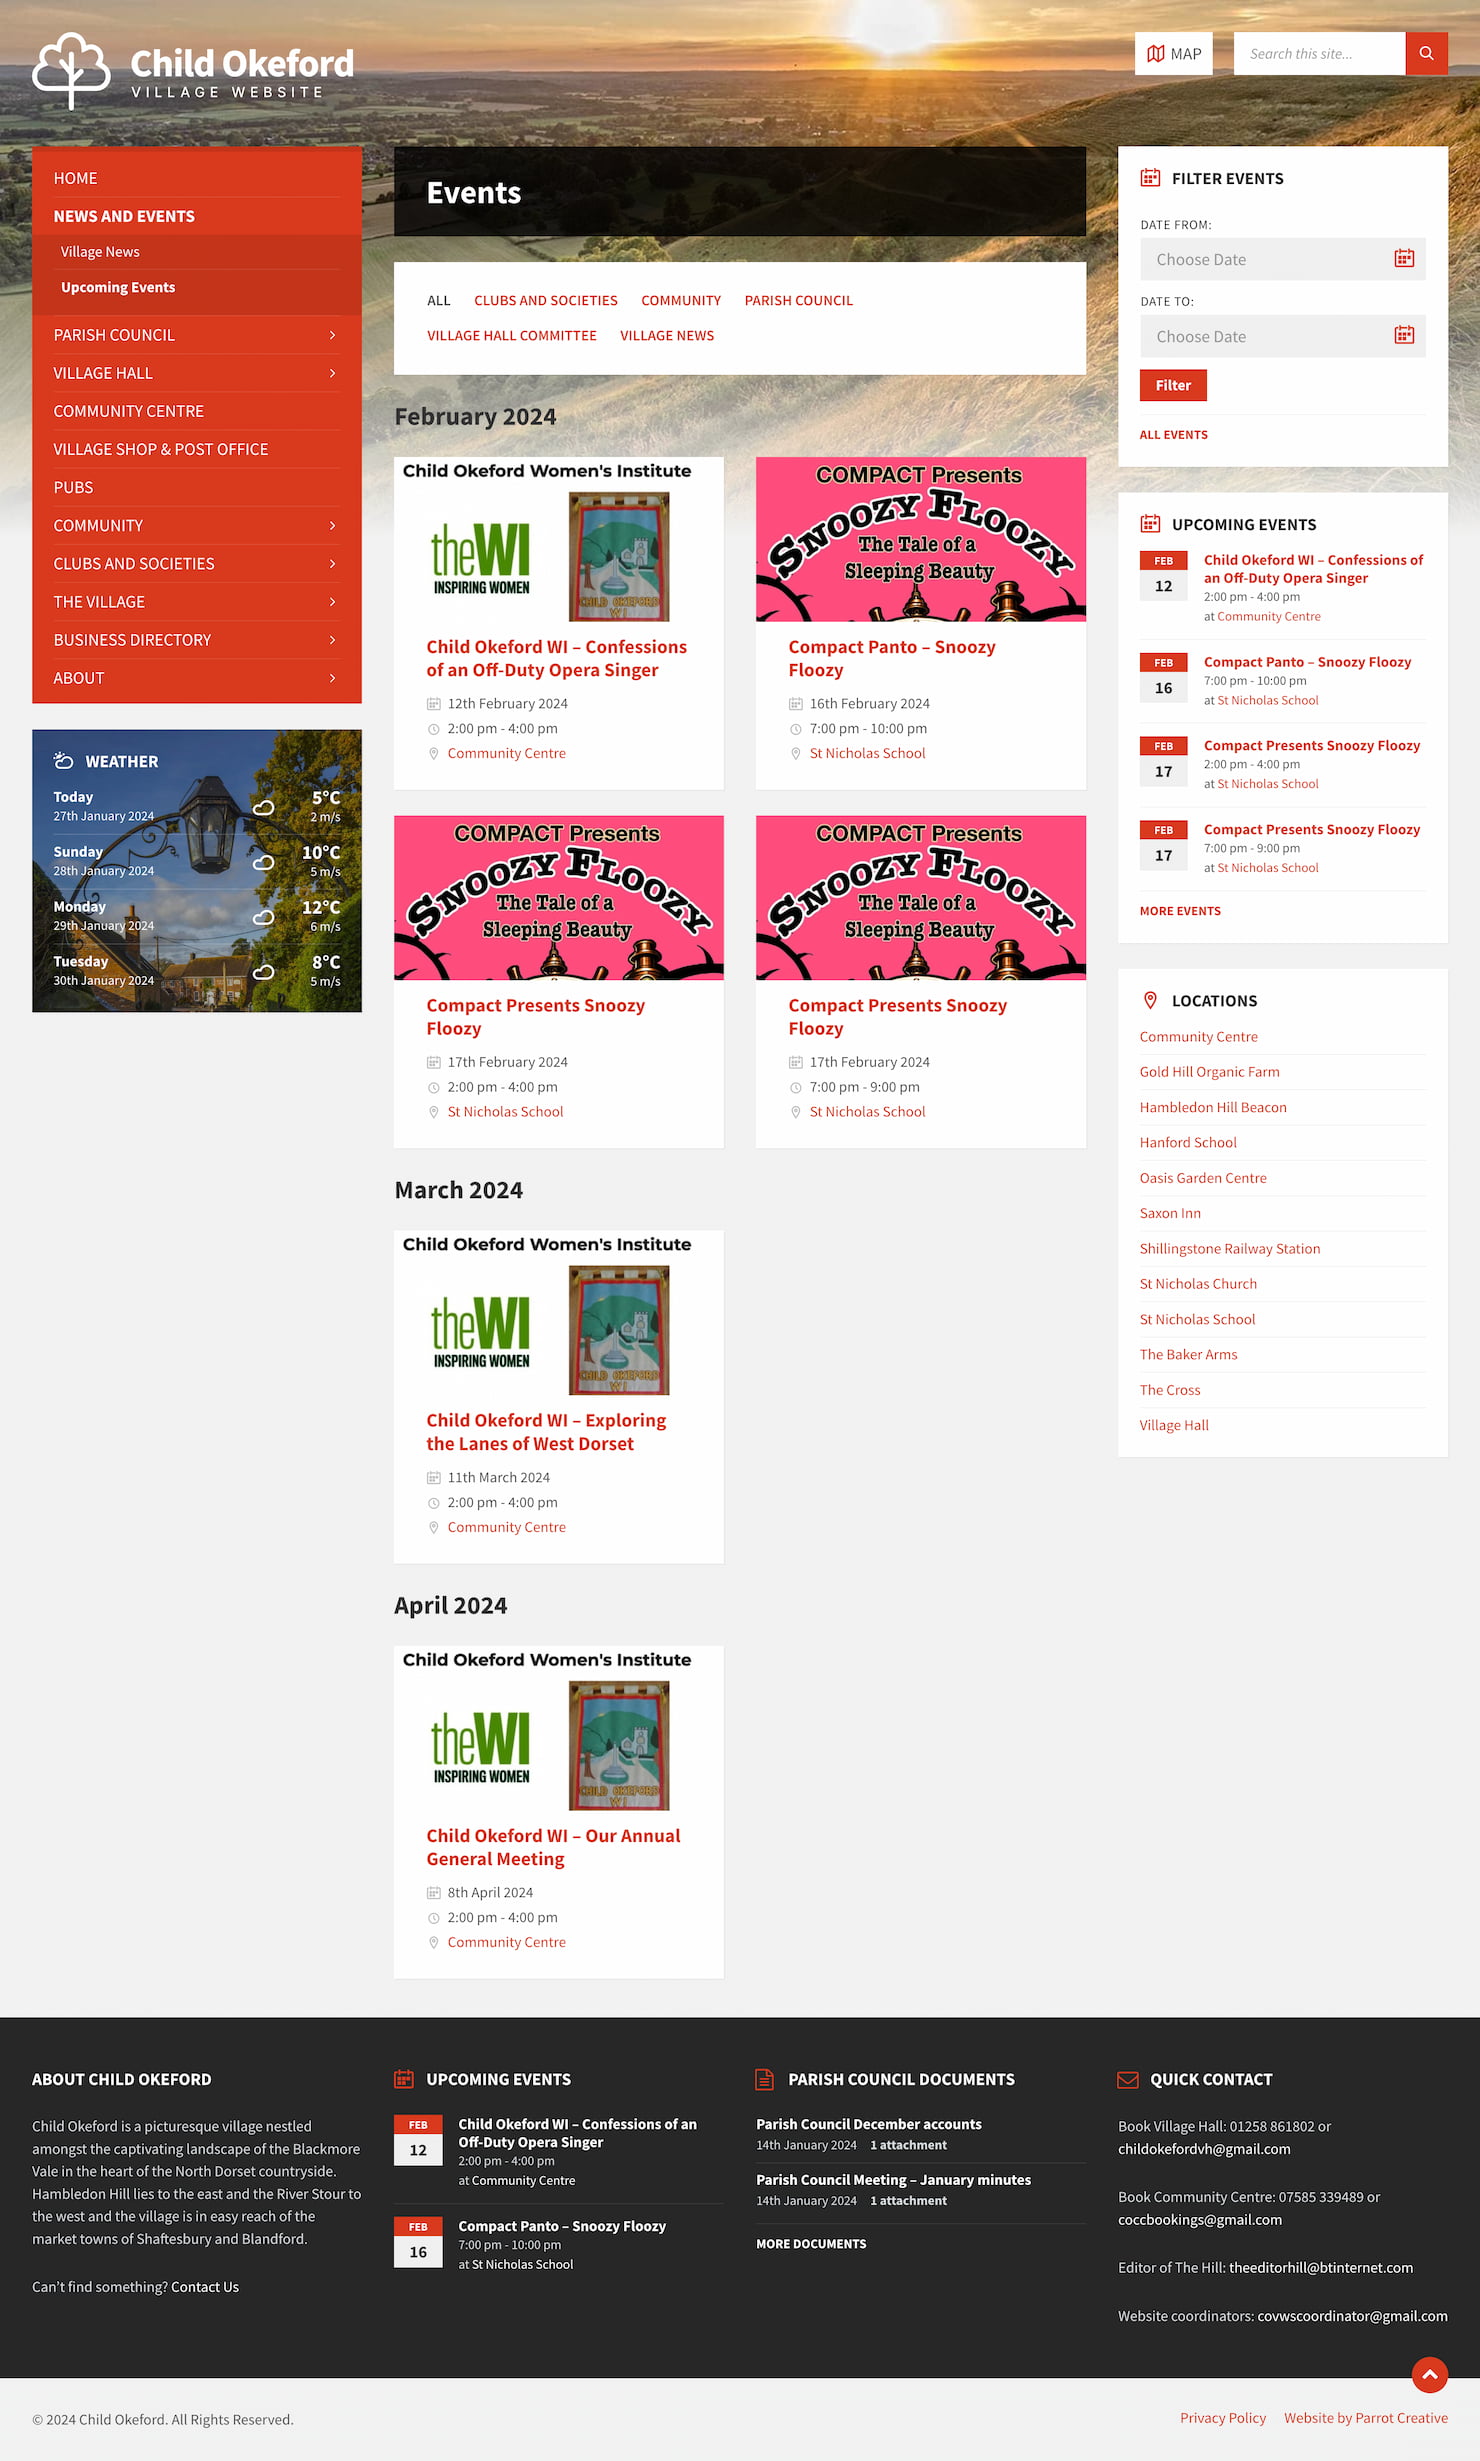 Village and Parish Council website design events page